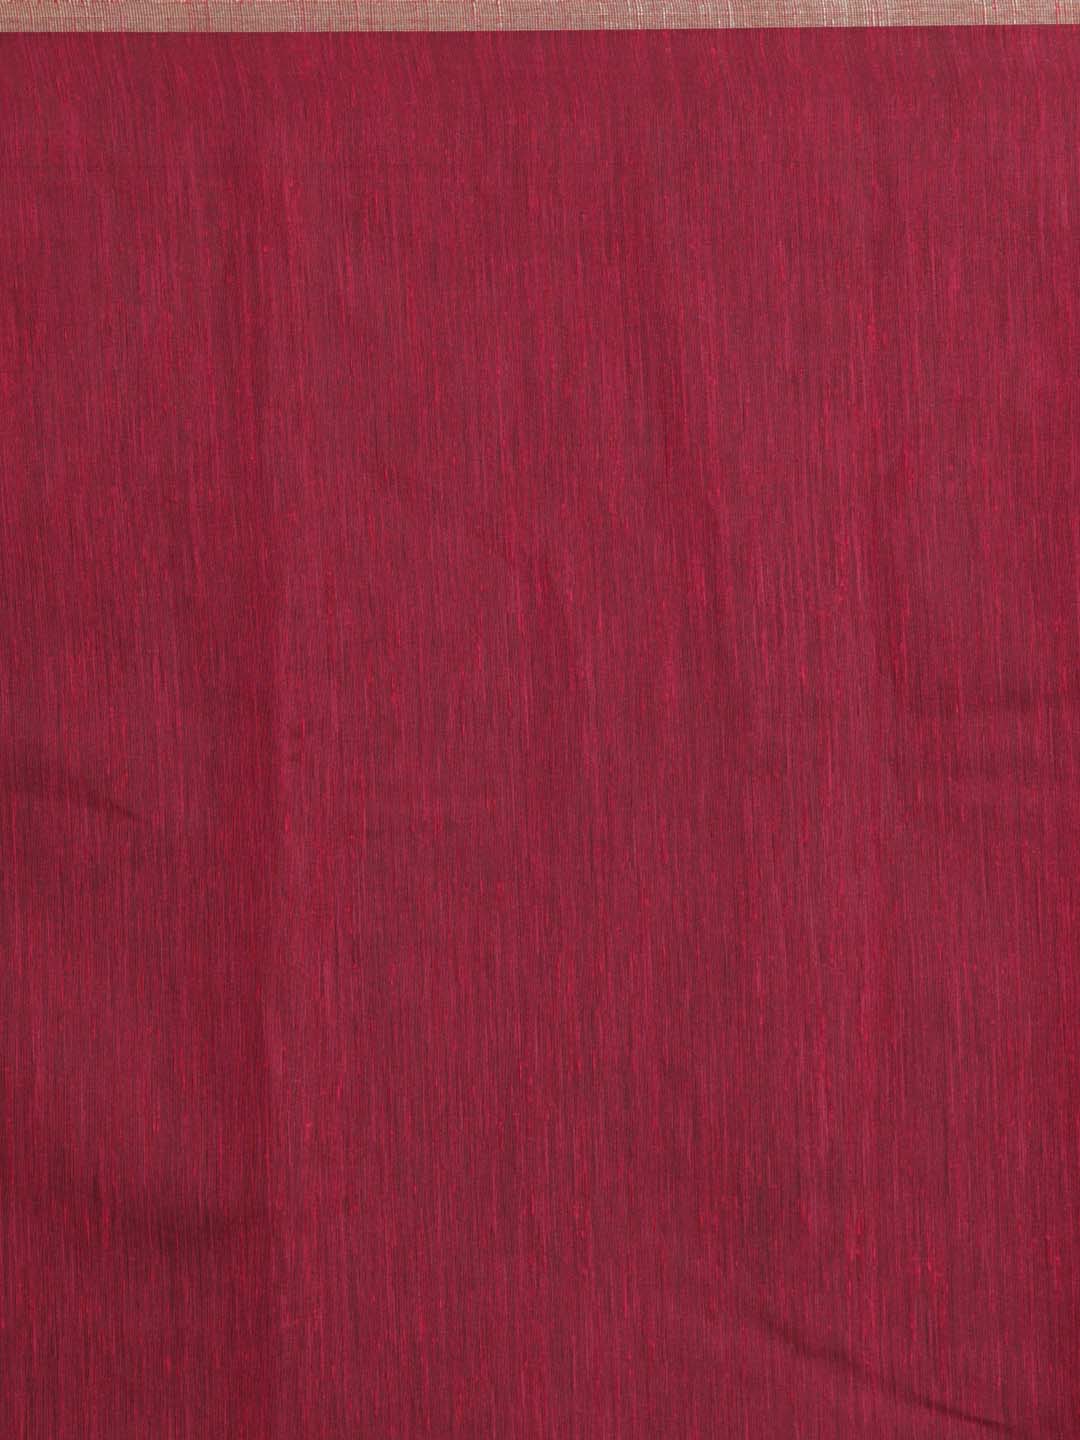 Indethnic Banarasi Brown Solid Daily Wear Saree - Saree Detail View